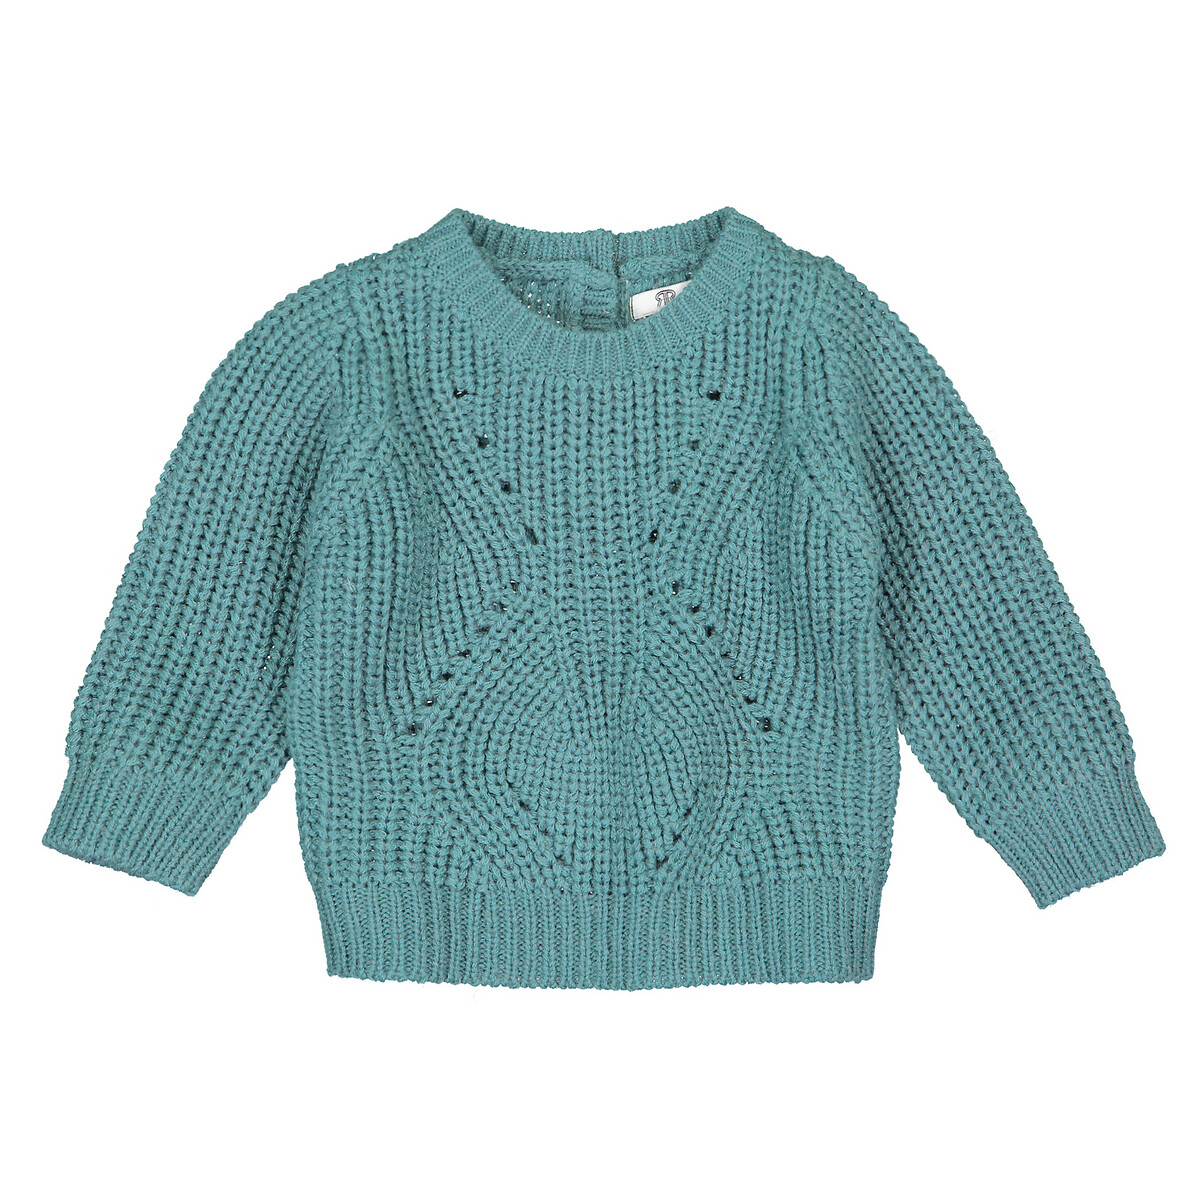 Пуловер La Redoute С круглым вырезом из трикотажа 3 мес-4 года 4 года - 102 см зеленый, размер 4 года - 102 см